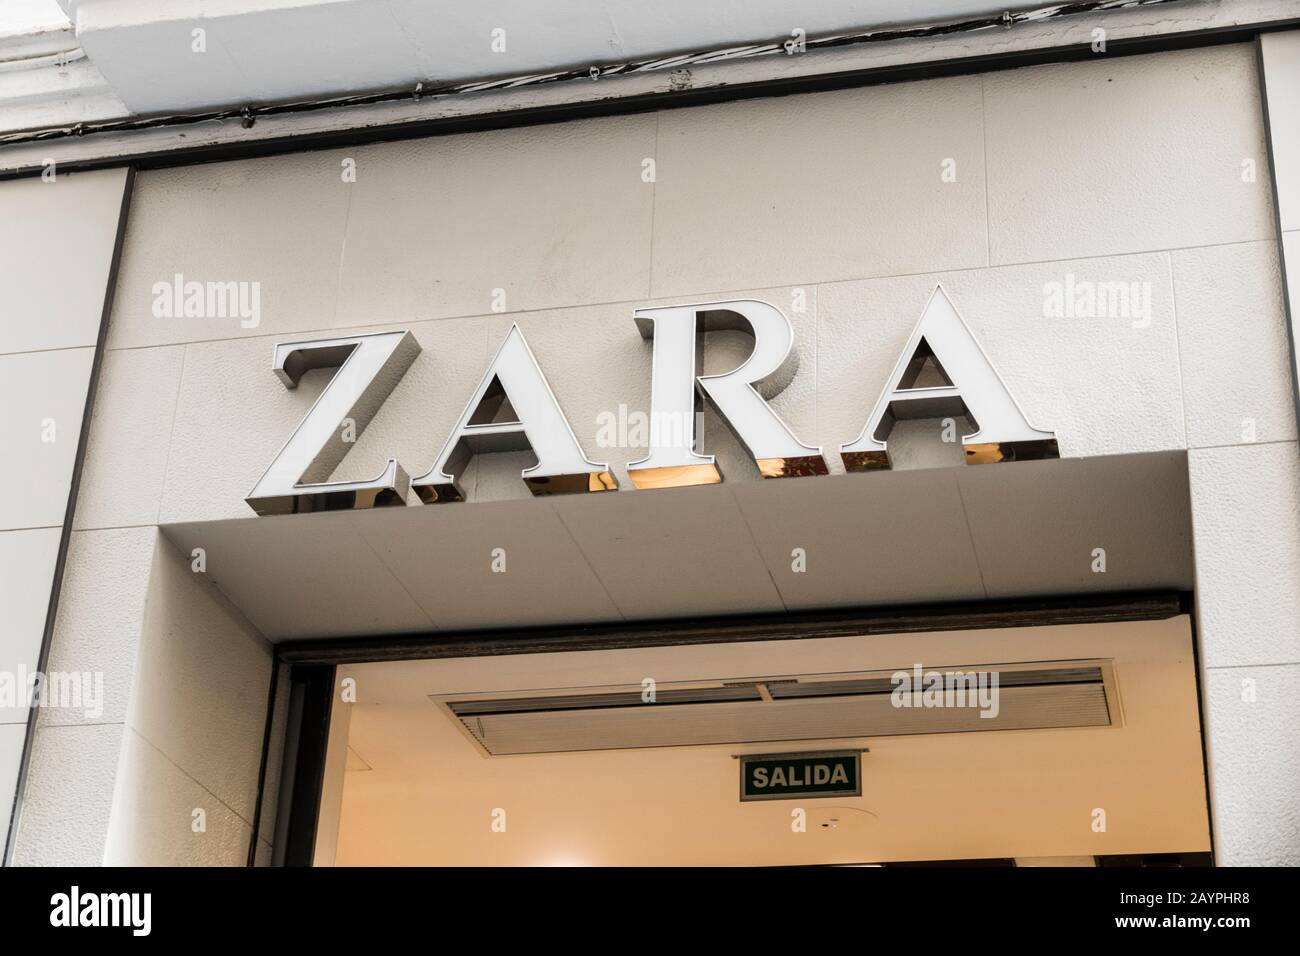 is zara a spanish company